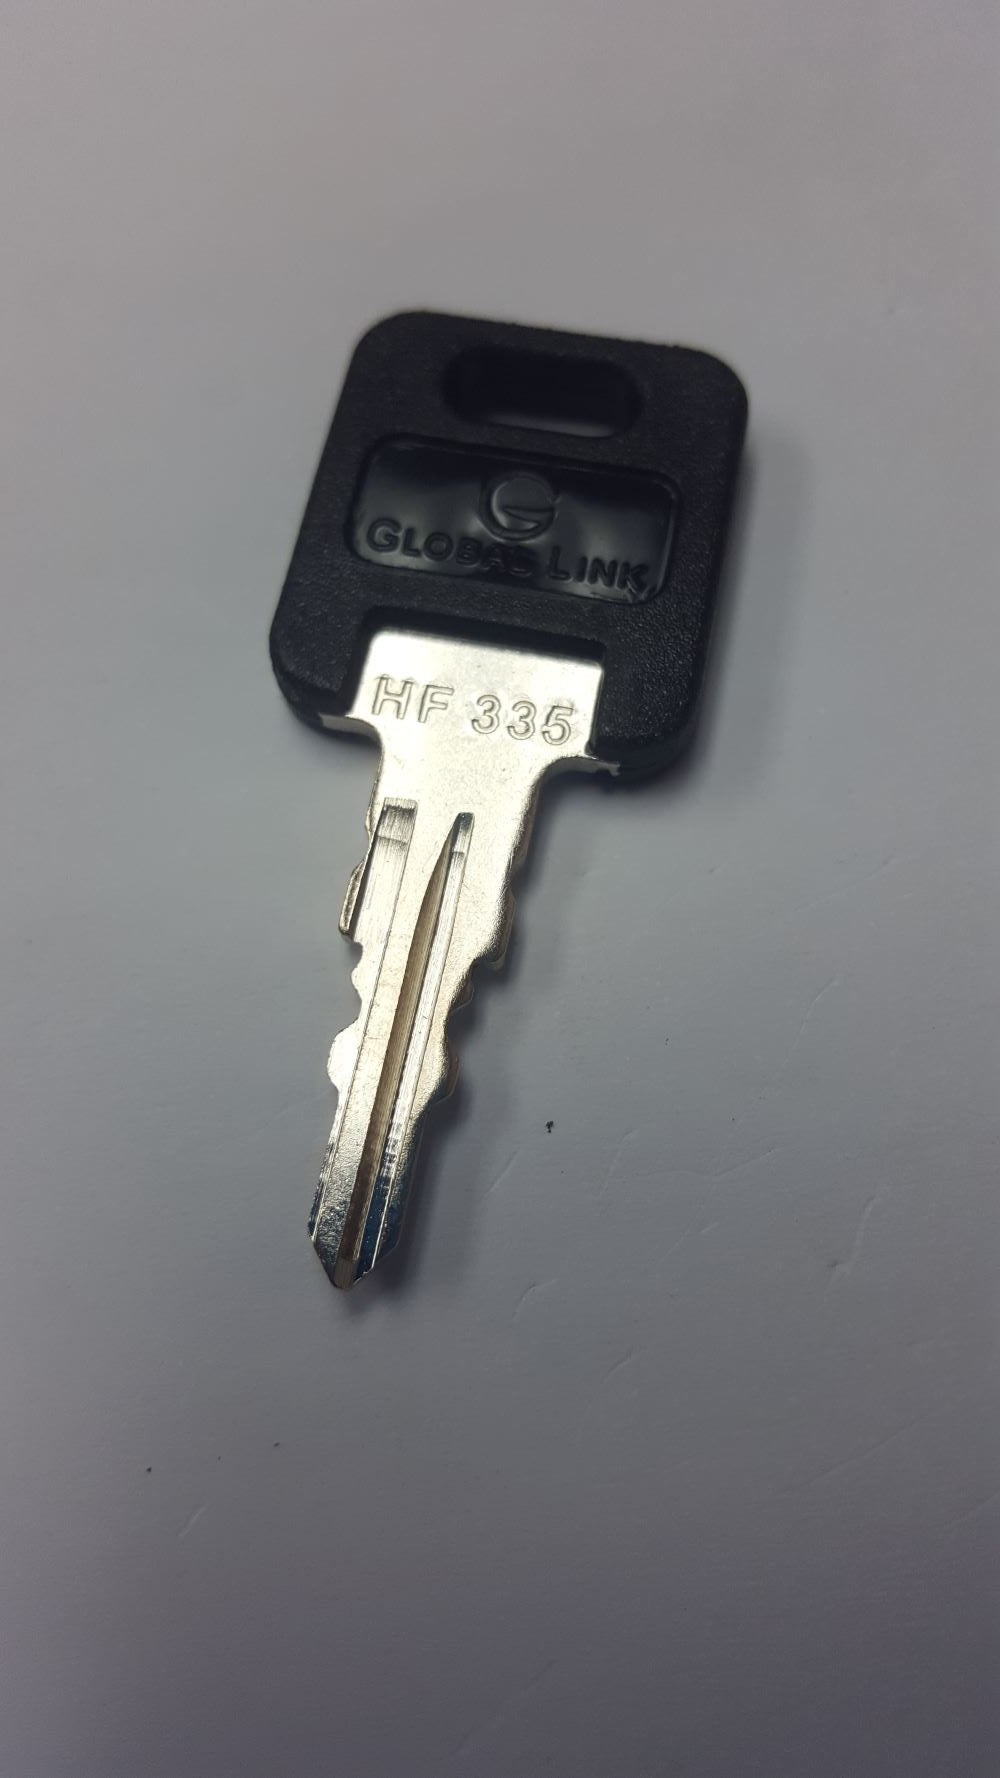 CPG KEY-HF-335 Pre-cut Stamped FIC Replacemnt HF335 Key